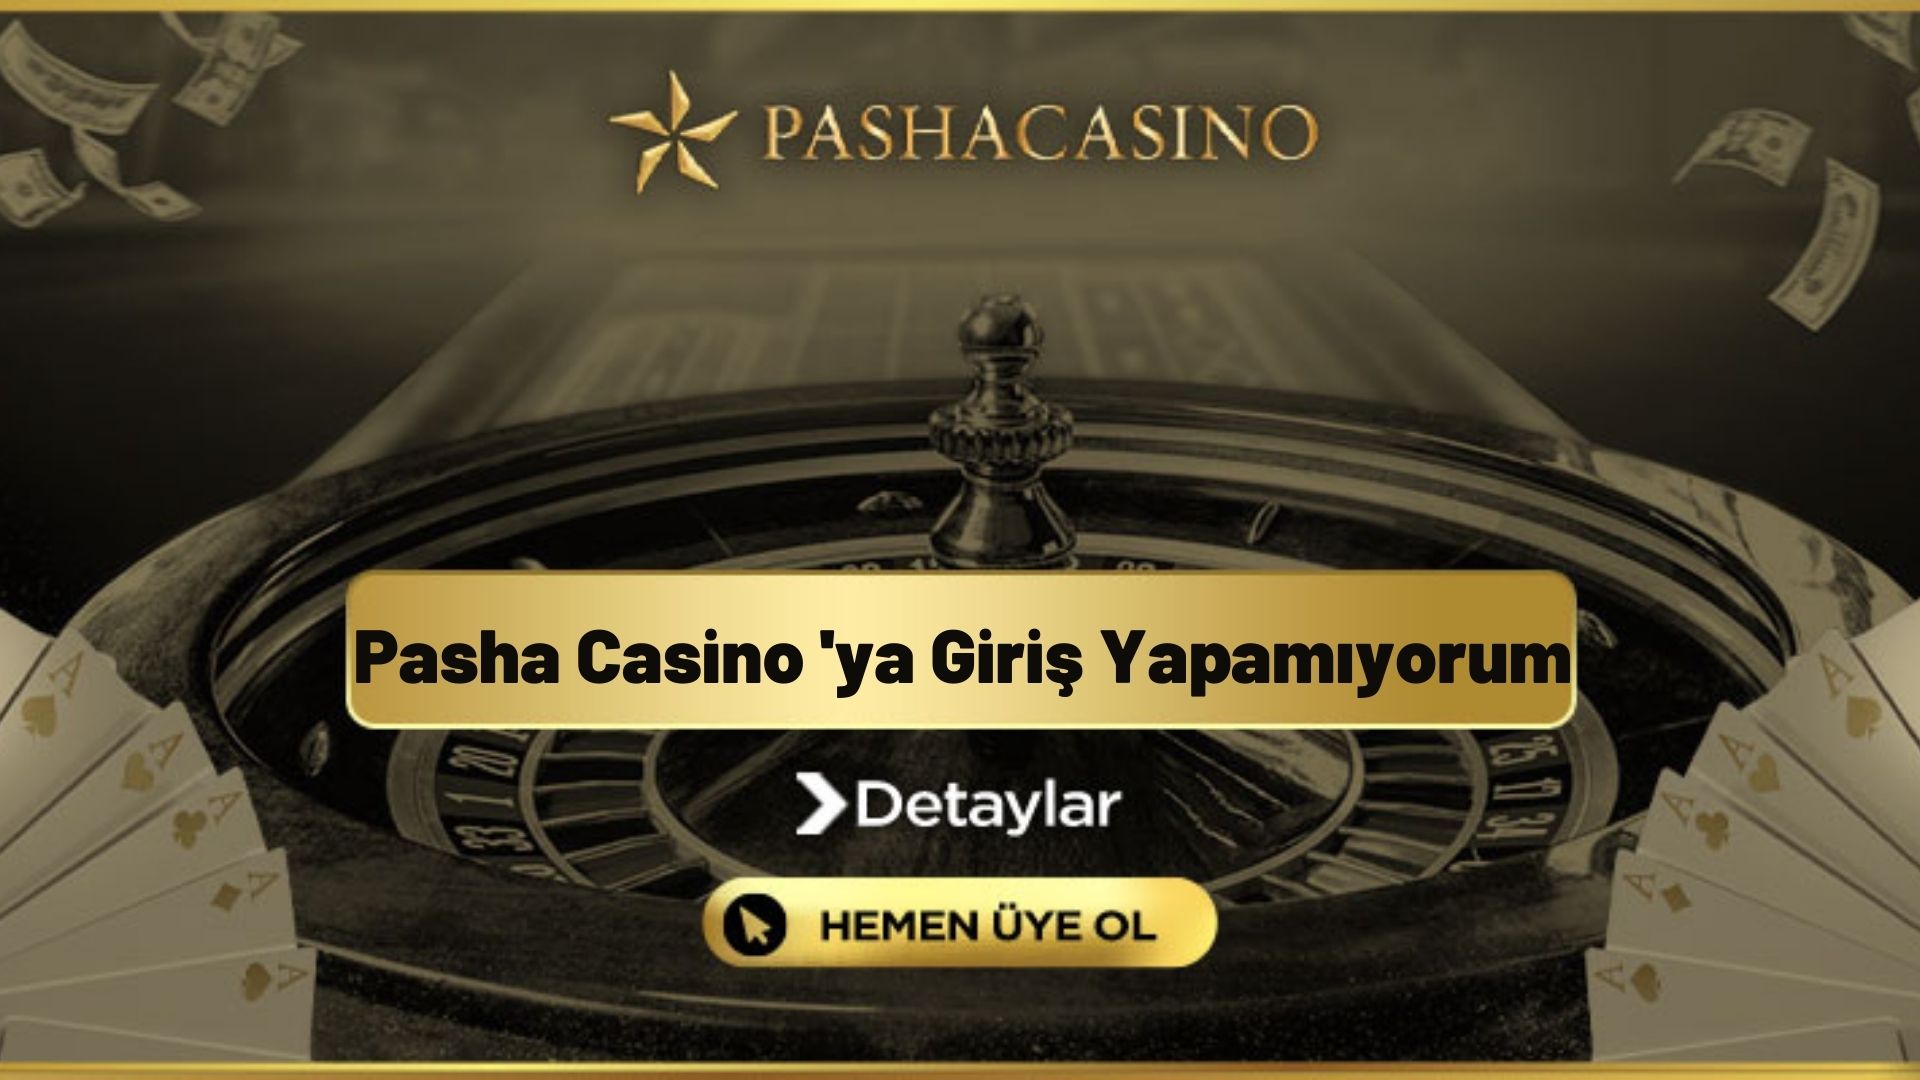 Pasha Casinoya Giriş Yapamıyorum